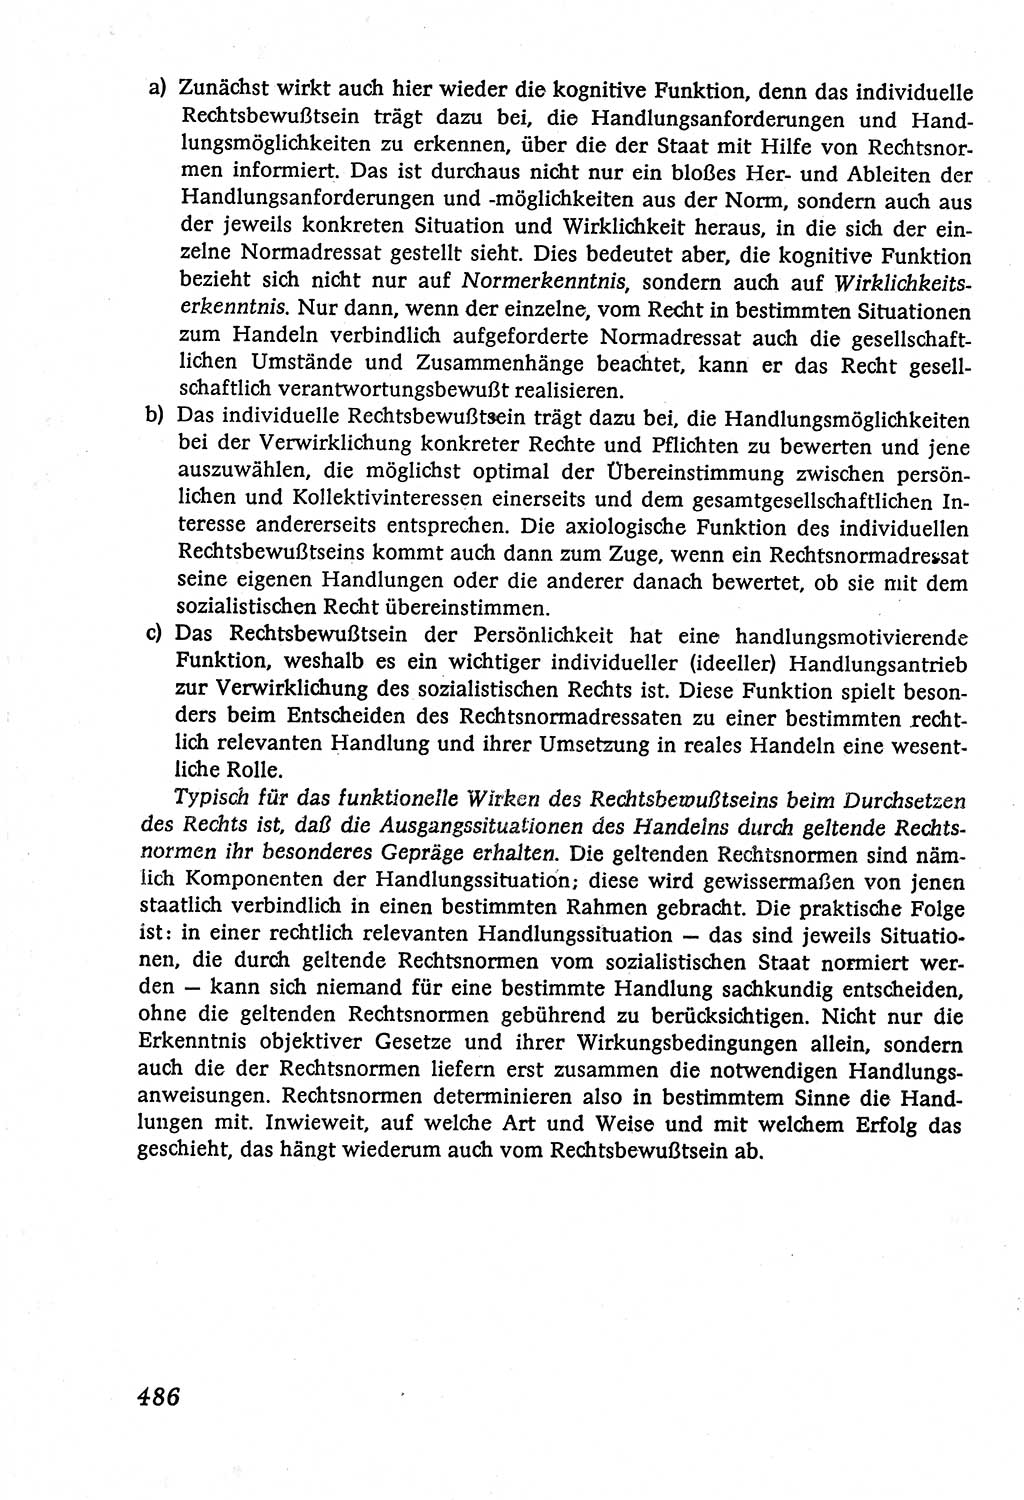 Marxistisch-leninistische (ML) Staats- und Rechtstheorie [Deutsche Demokratische Republik (DDR)], Lehrbuch 1980, Seite 486 (ML St.-R.-Th. DDR Lb. 1980, S. 486)